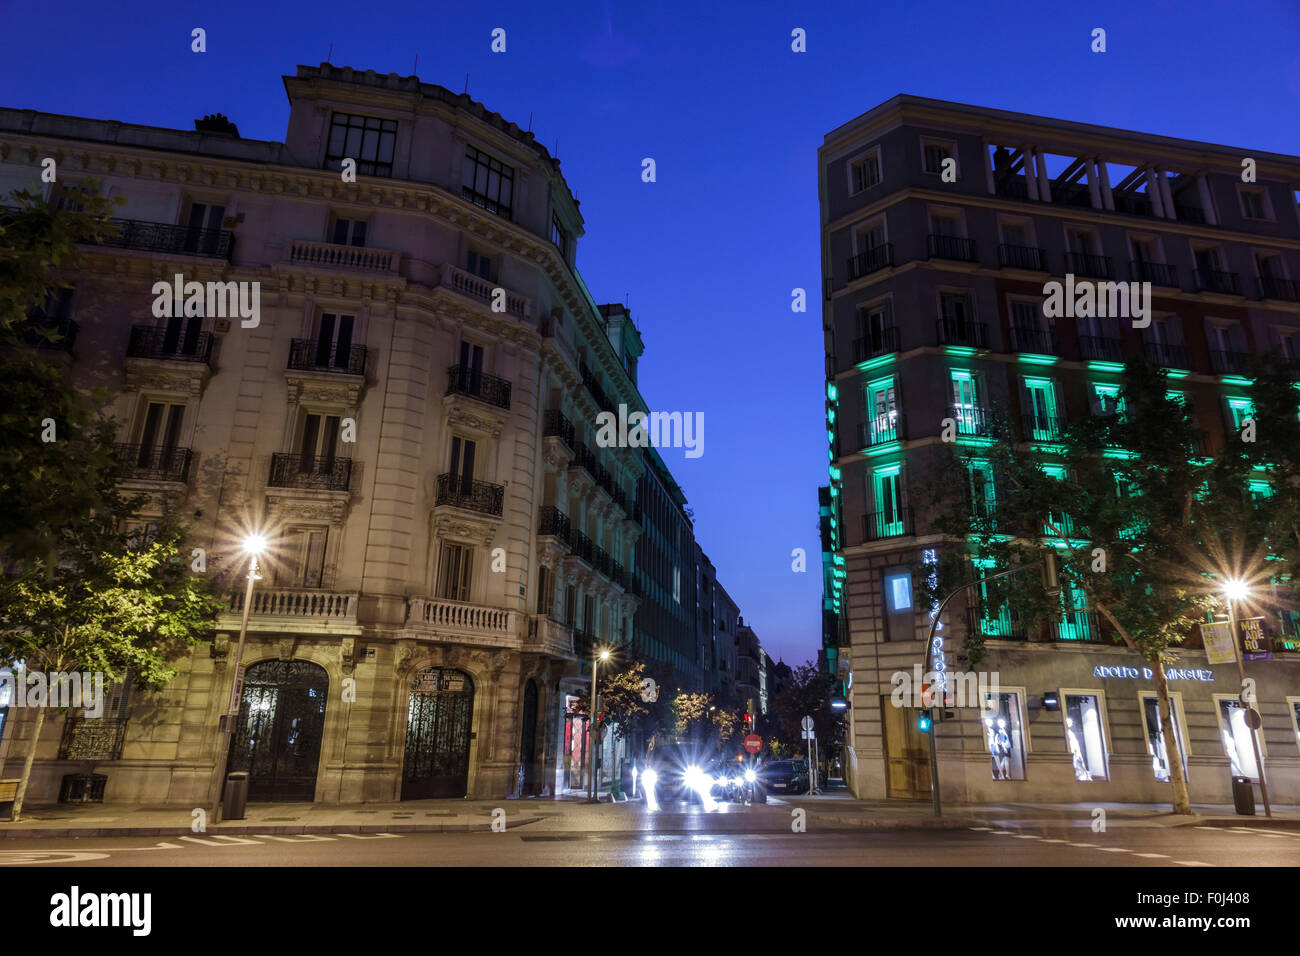 Madrid Espagne,Hispanic Recoletos,Salamanca,Calle de Alcala,Plaza de la Independencia,crépuscule,soirée nocturne,Spain150628269 Banque D'Images